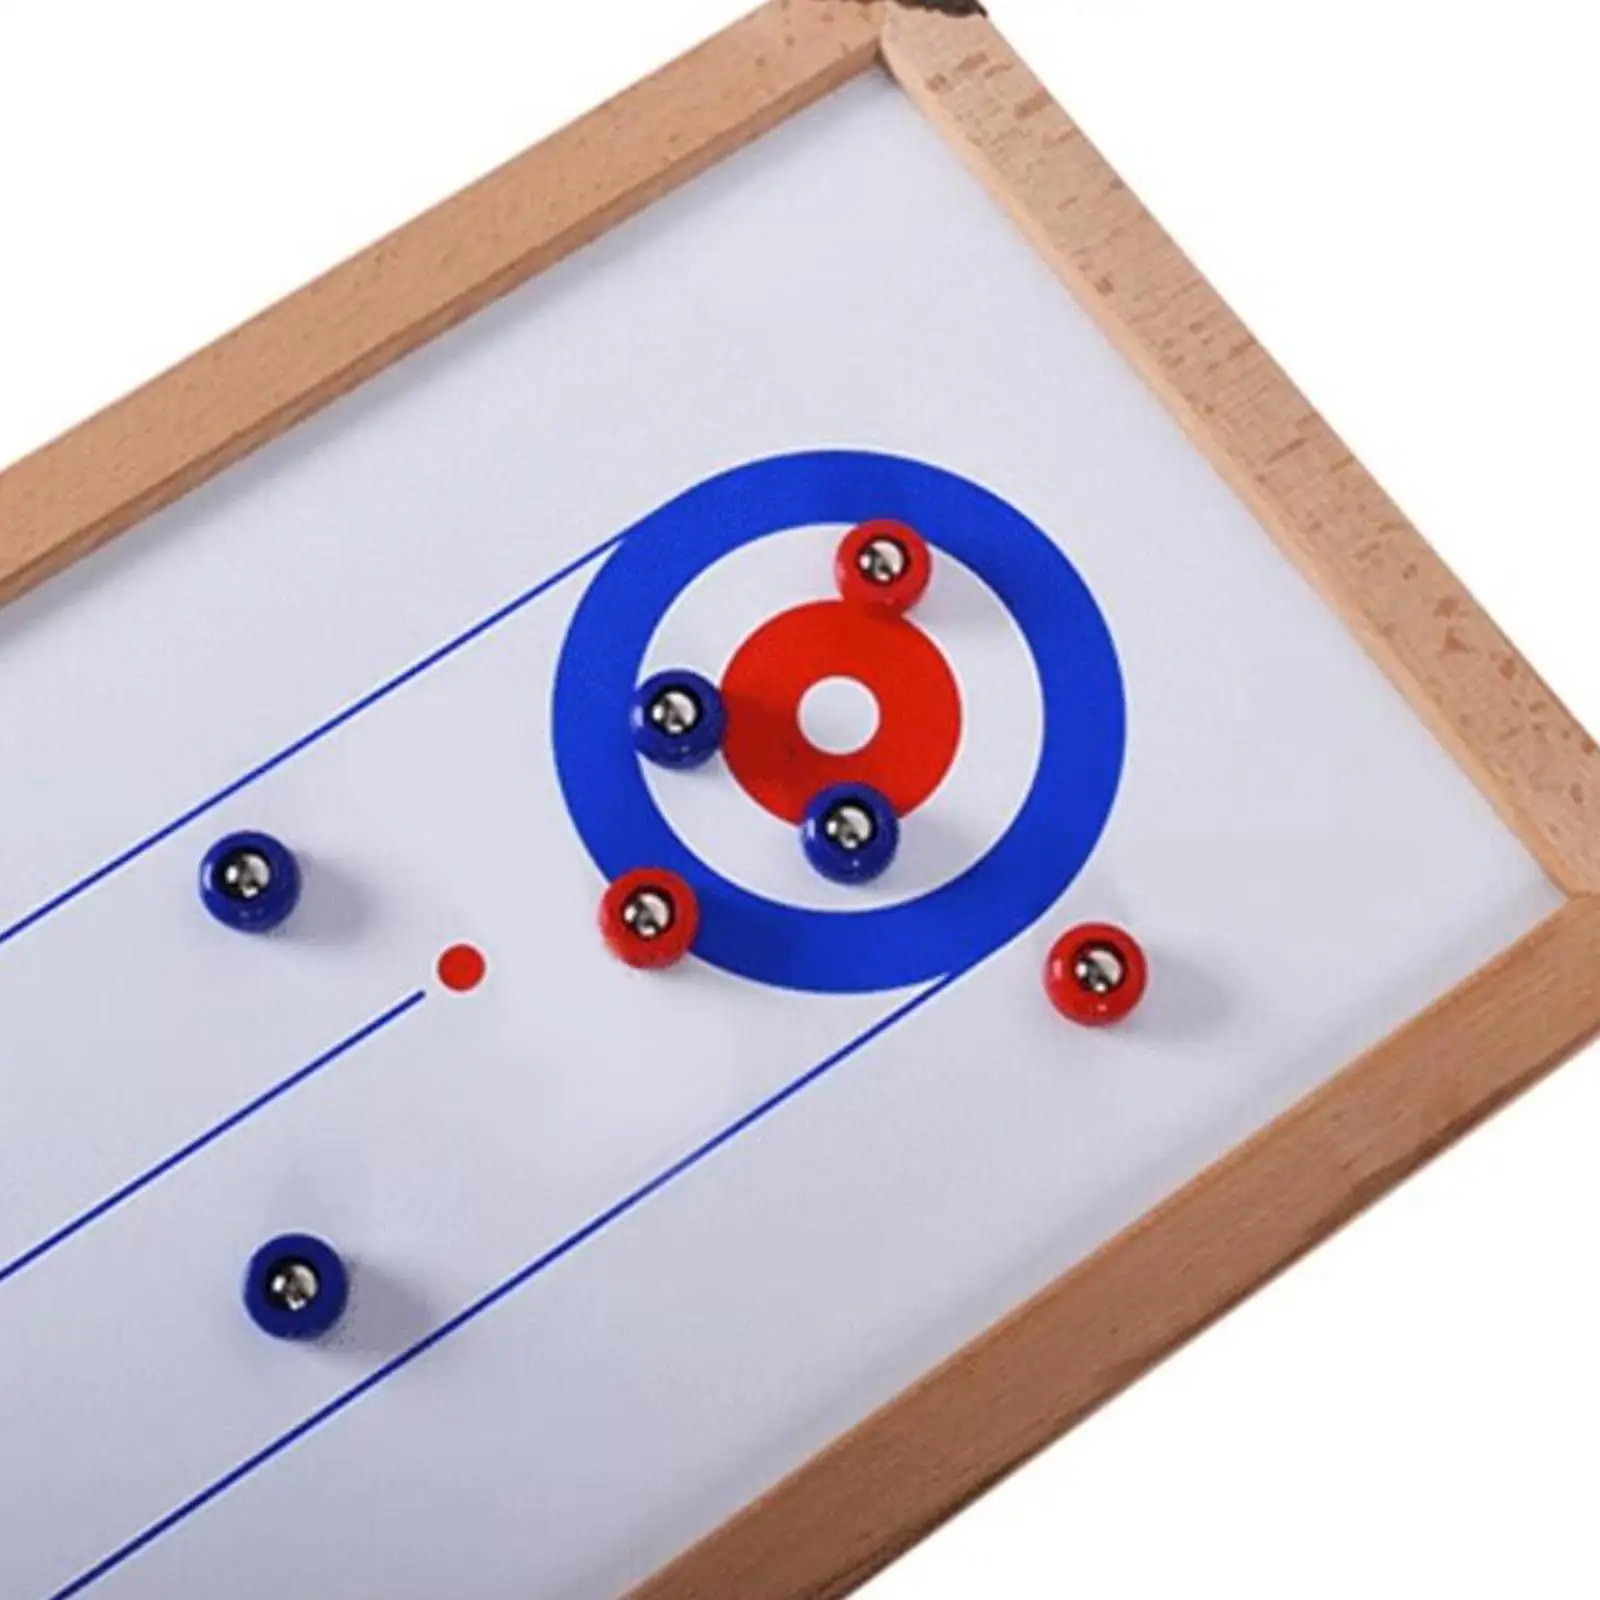 16Pcs Shuffleboard Pucks Shuffleboard Curling Accessories 4 Colors Diameter 25mm Replacement Shuffleboard Rollers Set for Games